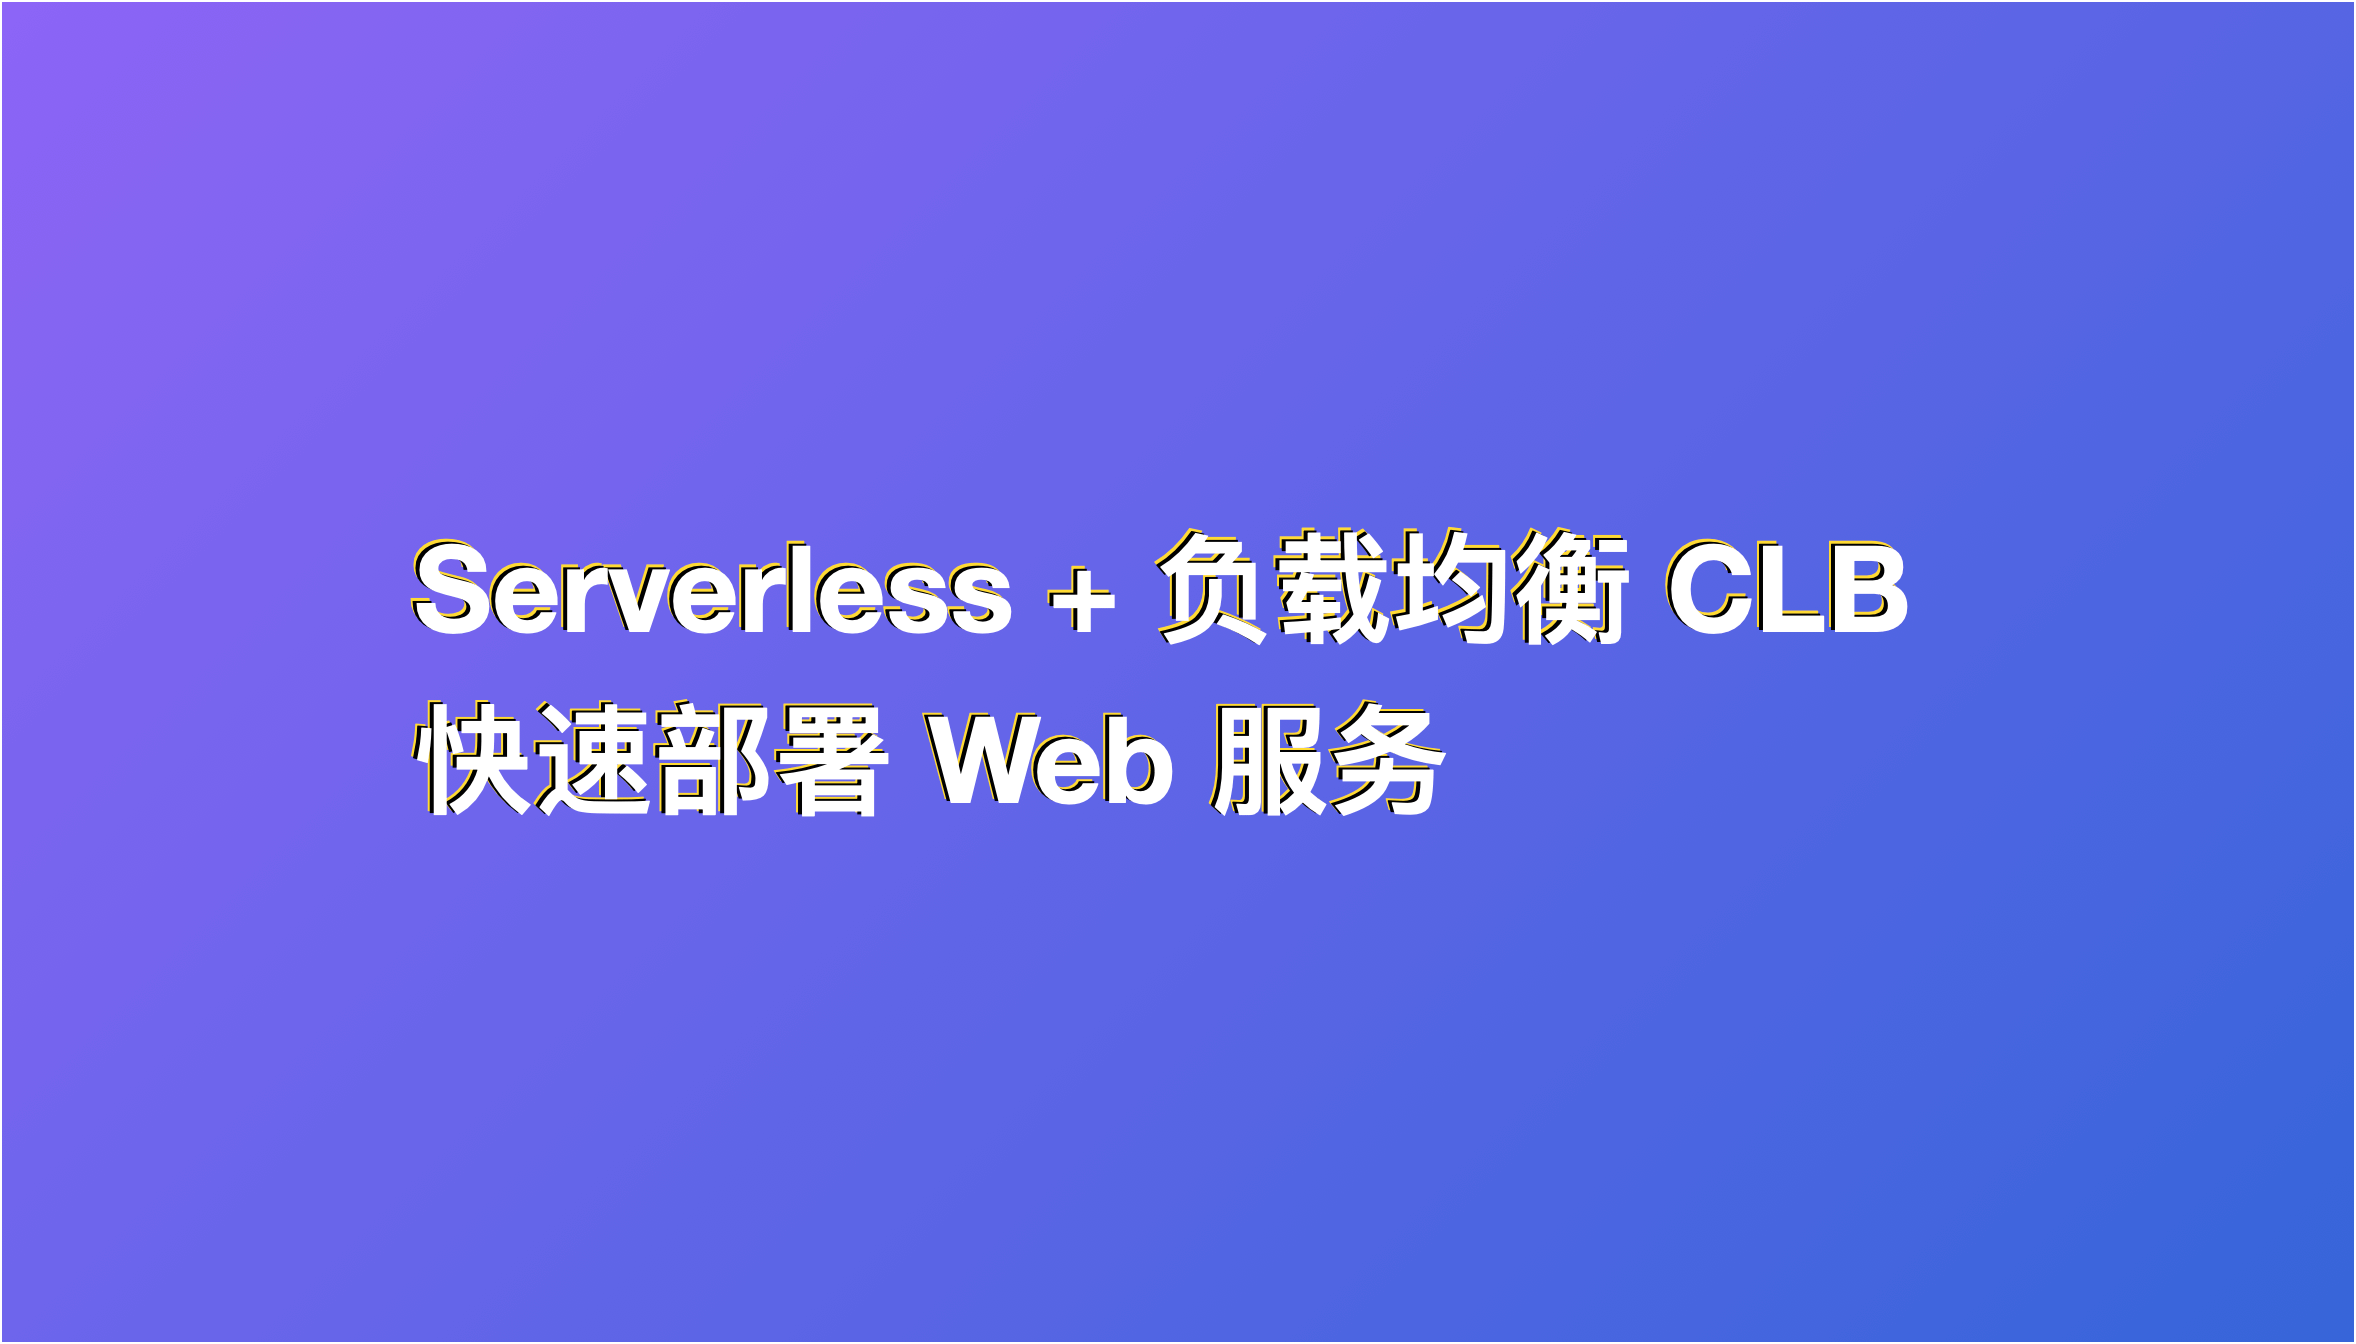 如何使用 Serverless + CLB 快速部署 Web 服务？